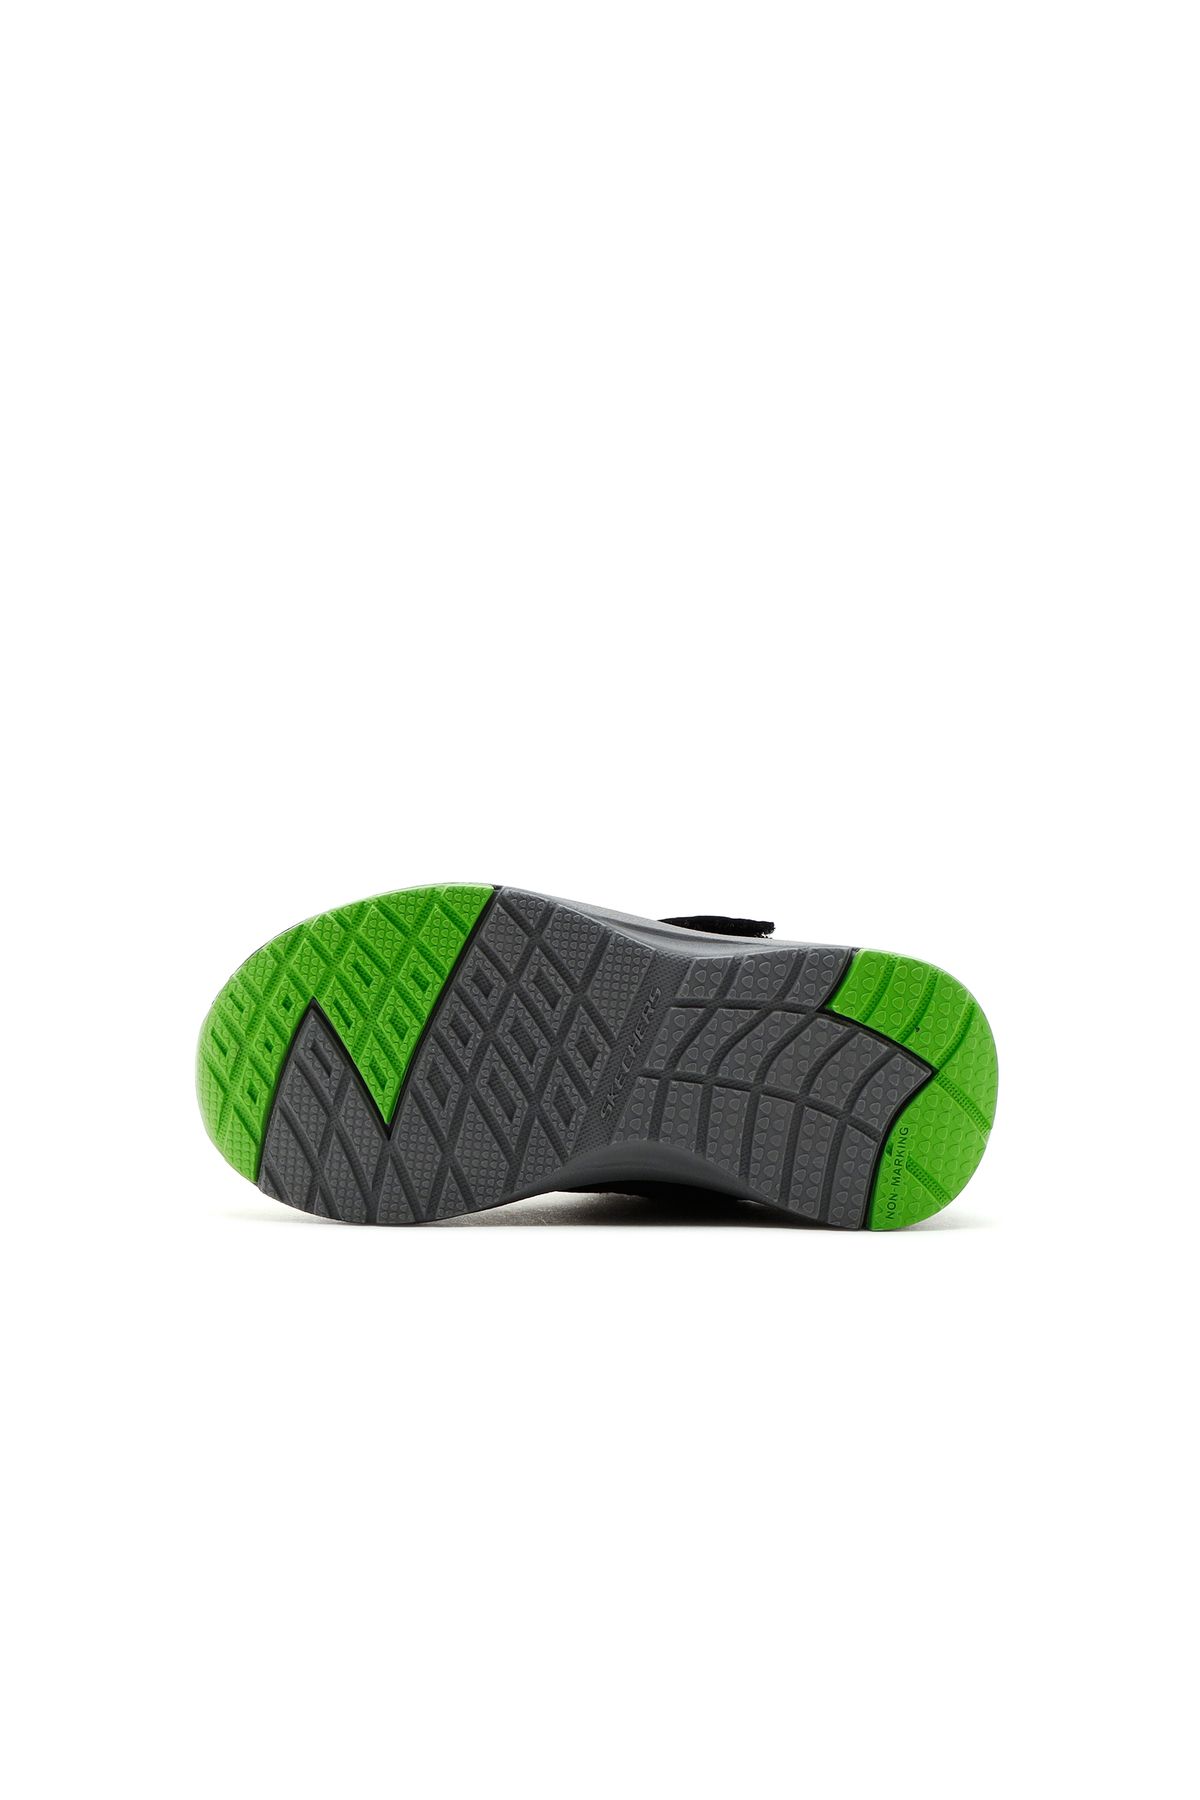 Skechers Dynamic Tread - Hydrode Küçük Erkek Çocuk Siyah Spor Ayakkabı 403661n Blk